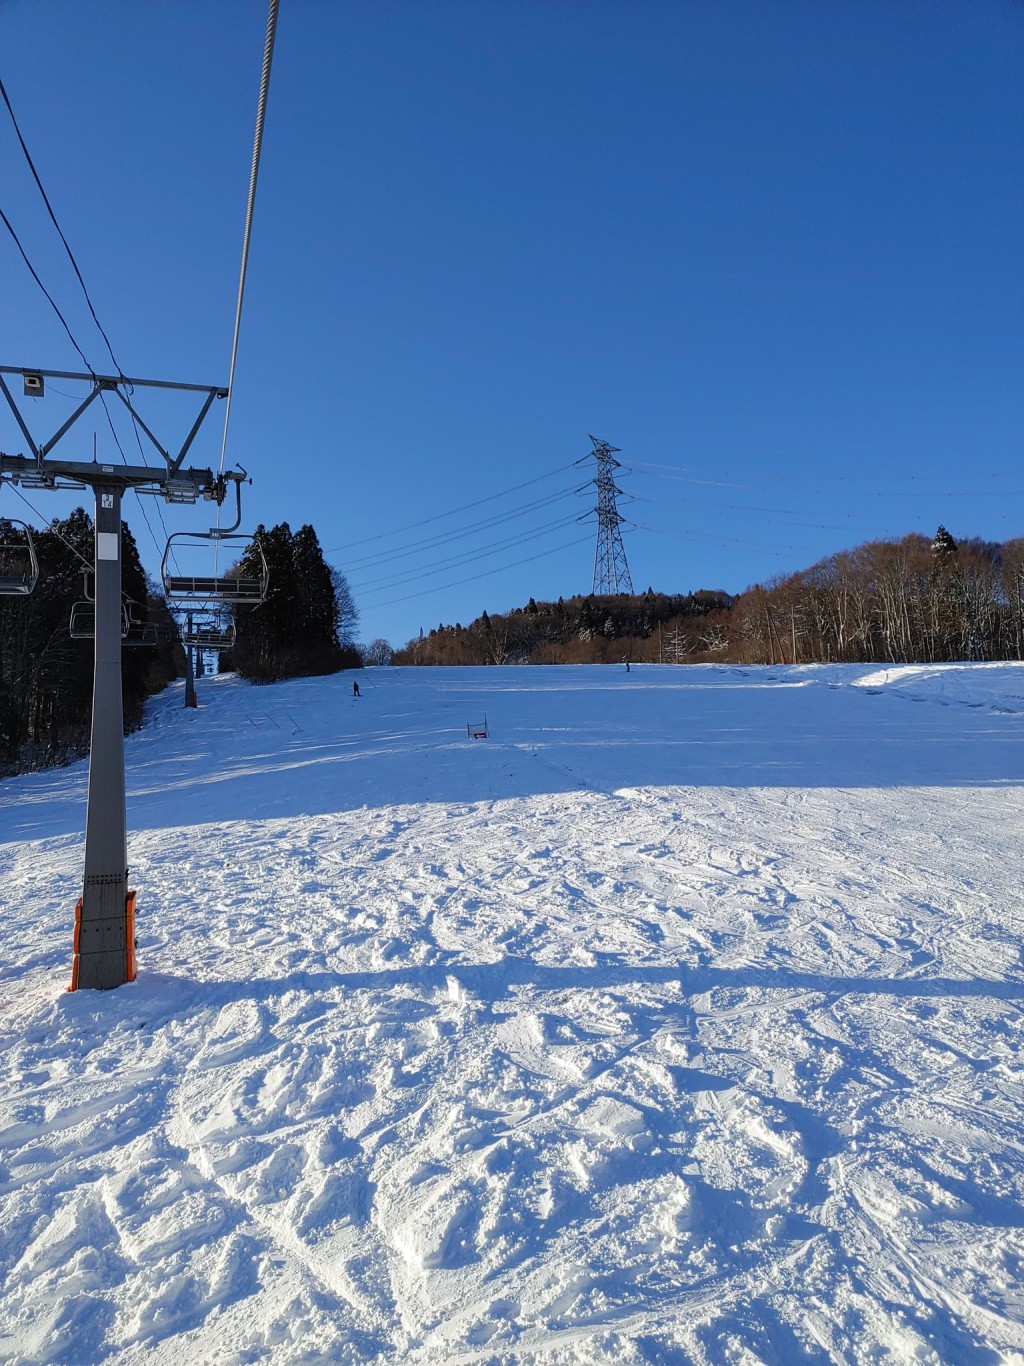 有在新潟的中國滑雪教練指，遊客絕不可進入滑雪場禁止進入的雪道滑雪。社交平台X